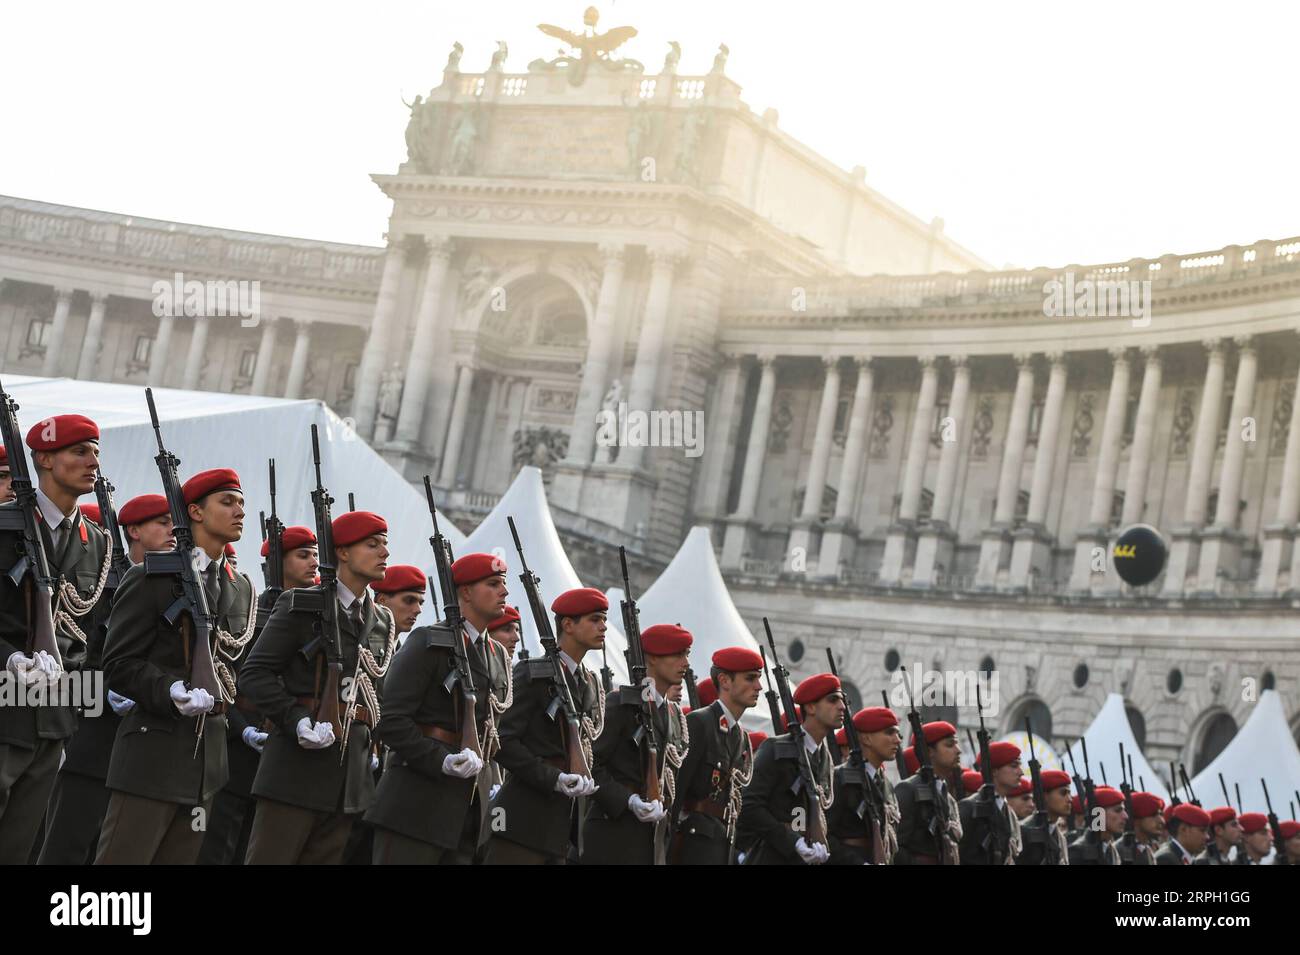 191026 -- VIENNE, le 26 octobre 2019 -- les gardes d honneur marchent en formation lors d une cérémonie le jour de la fête nationale de l Autriche à Vienne, Autriche, le 26 octobre 2019. AUTRICHE-VIENNE-FÊTE NATIONALE GuoxChen PUBLICATIONxNOTxINxCHN Banque D'Images